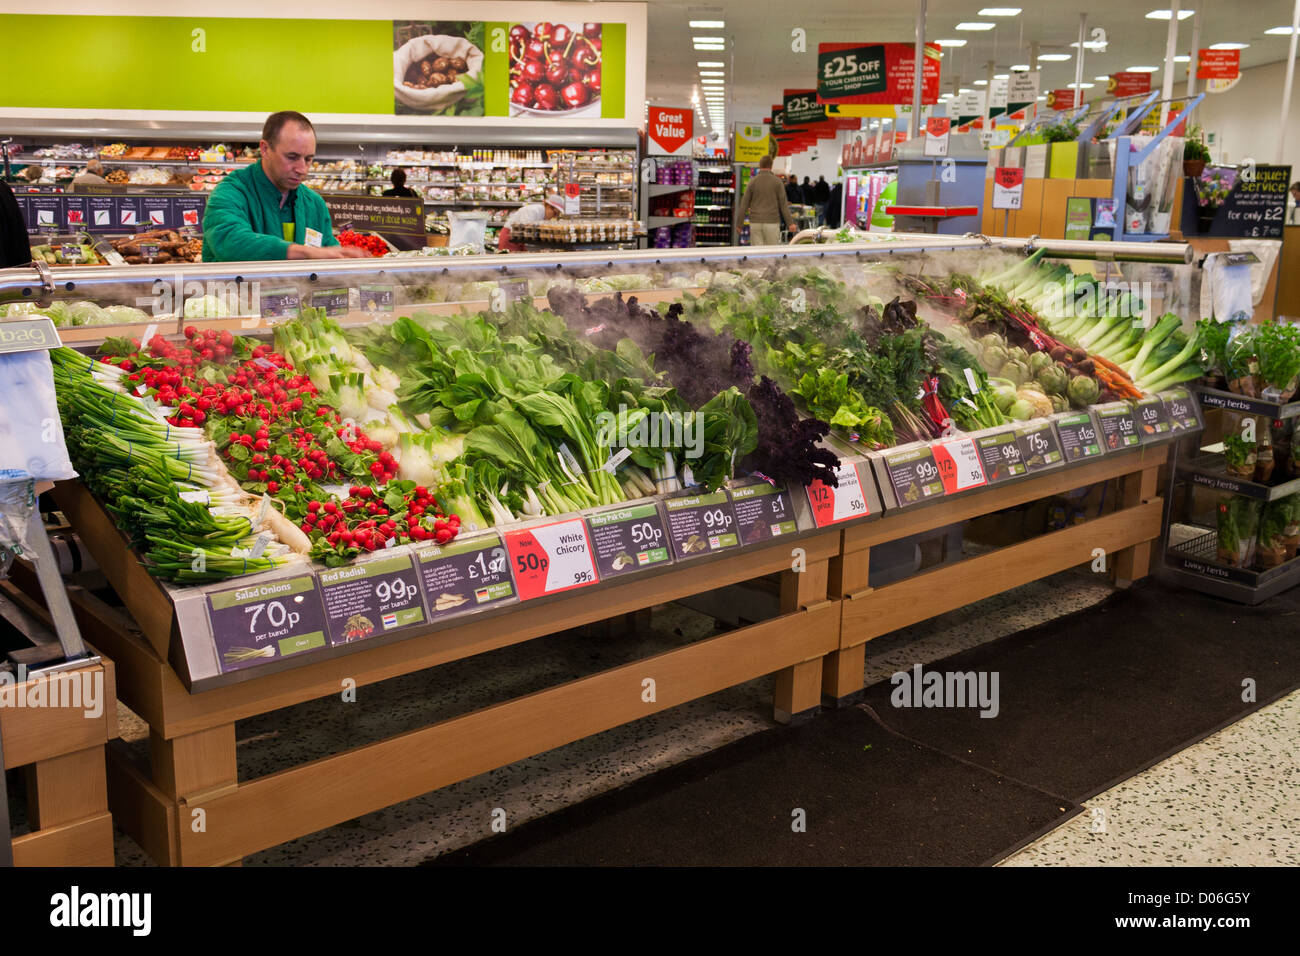 Morrison supermercado del sistema de humidificación para la preservación de vegetales frescos. Foto de stock